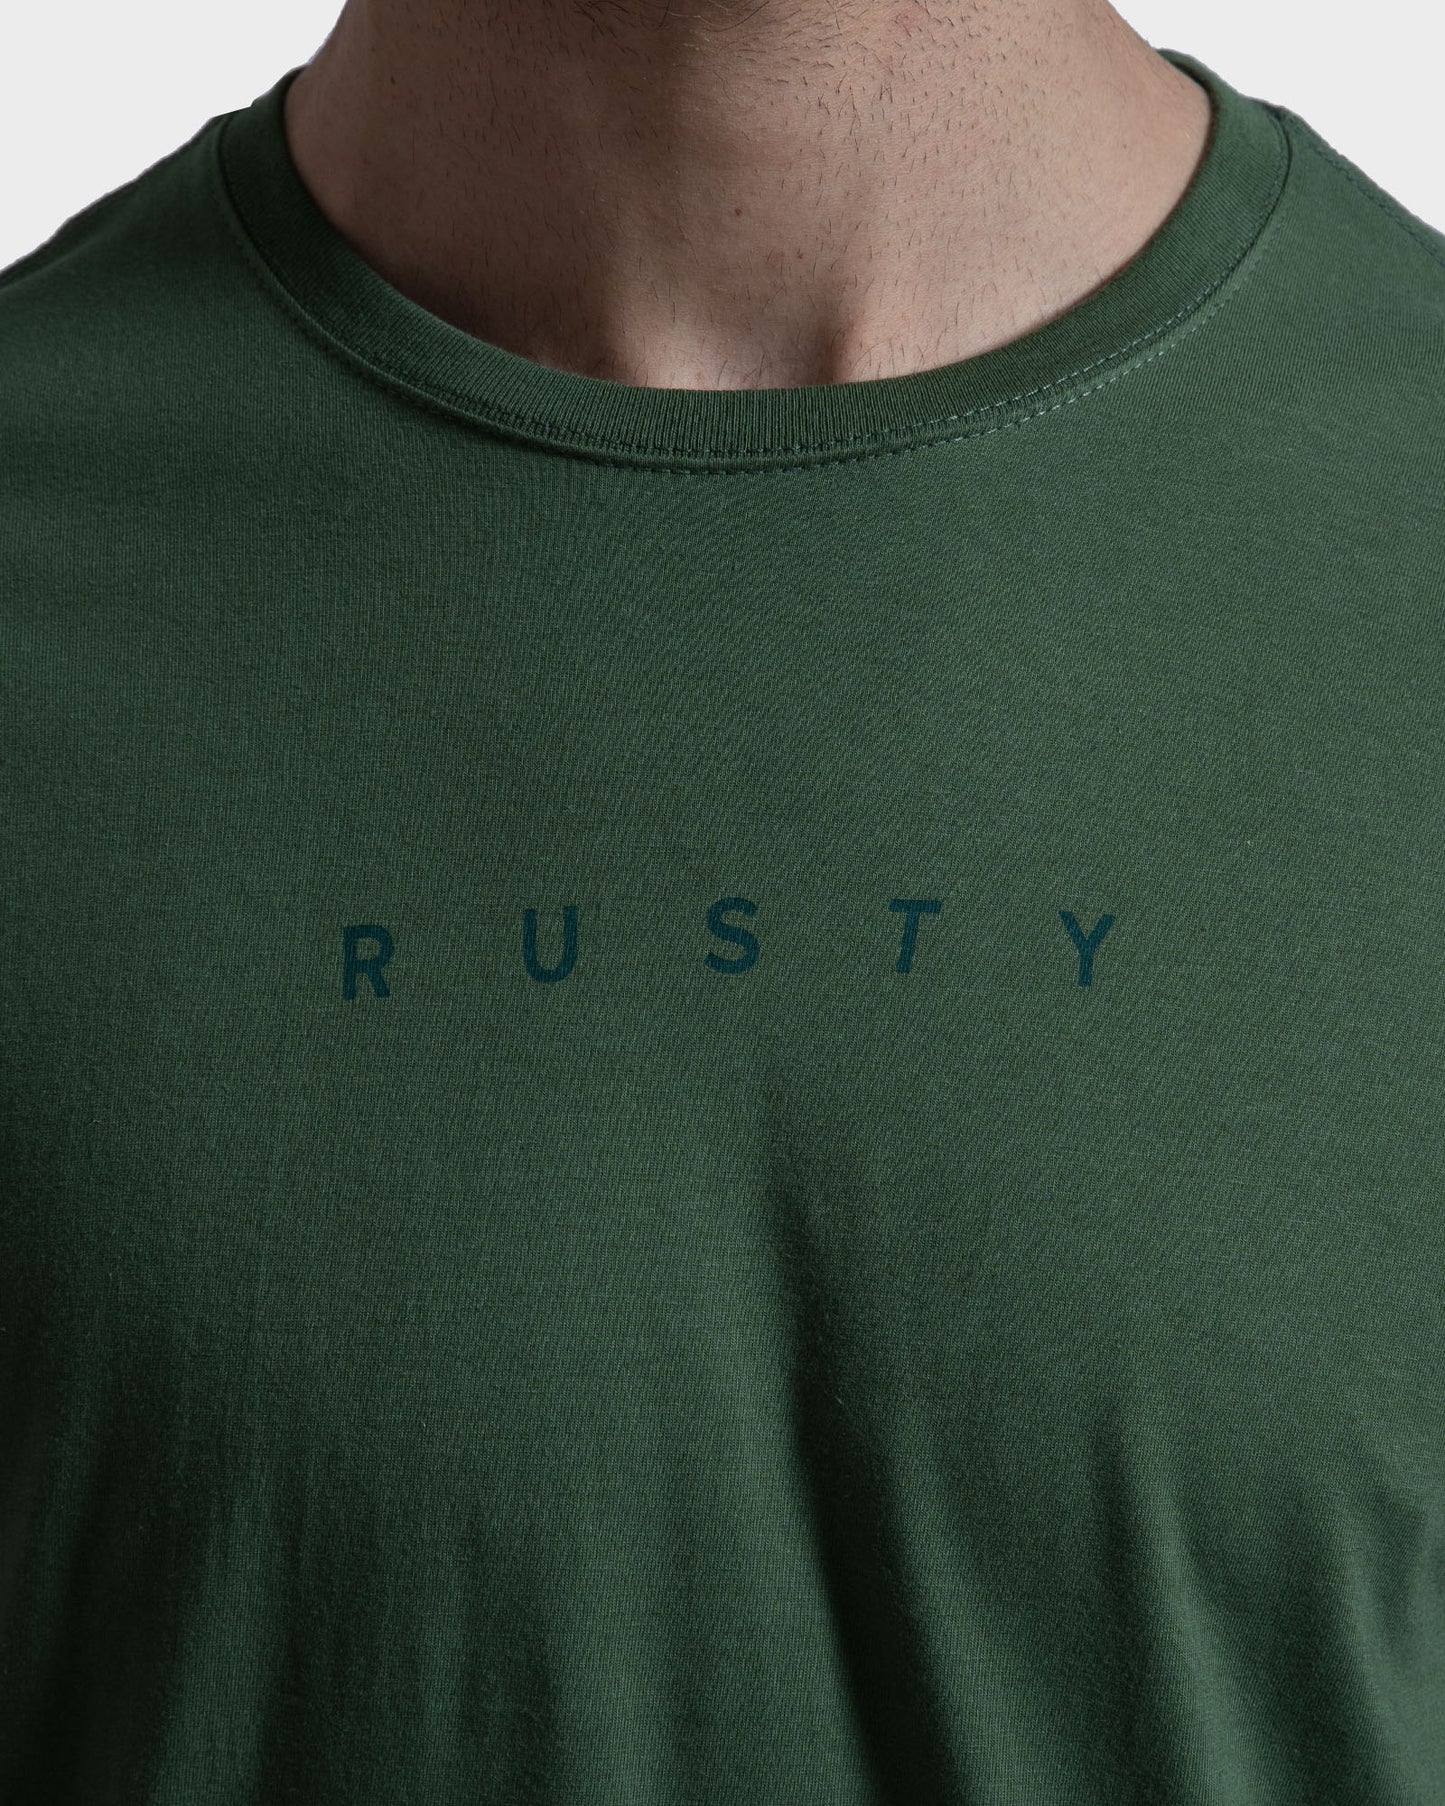 Camiseta Rusty Short Cut Verde